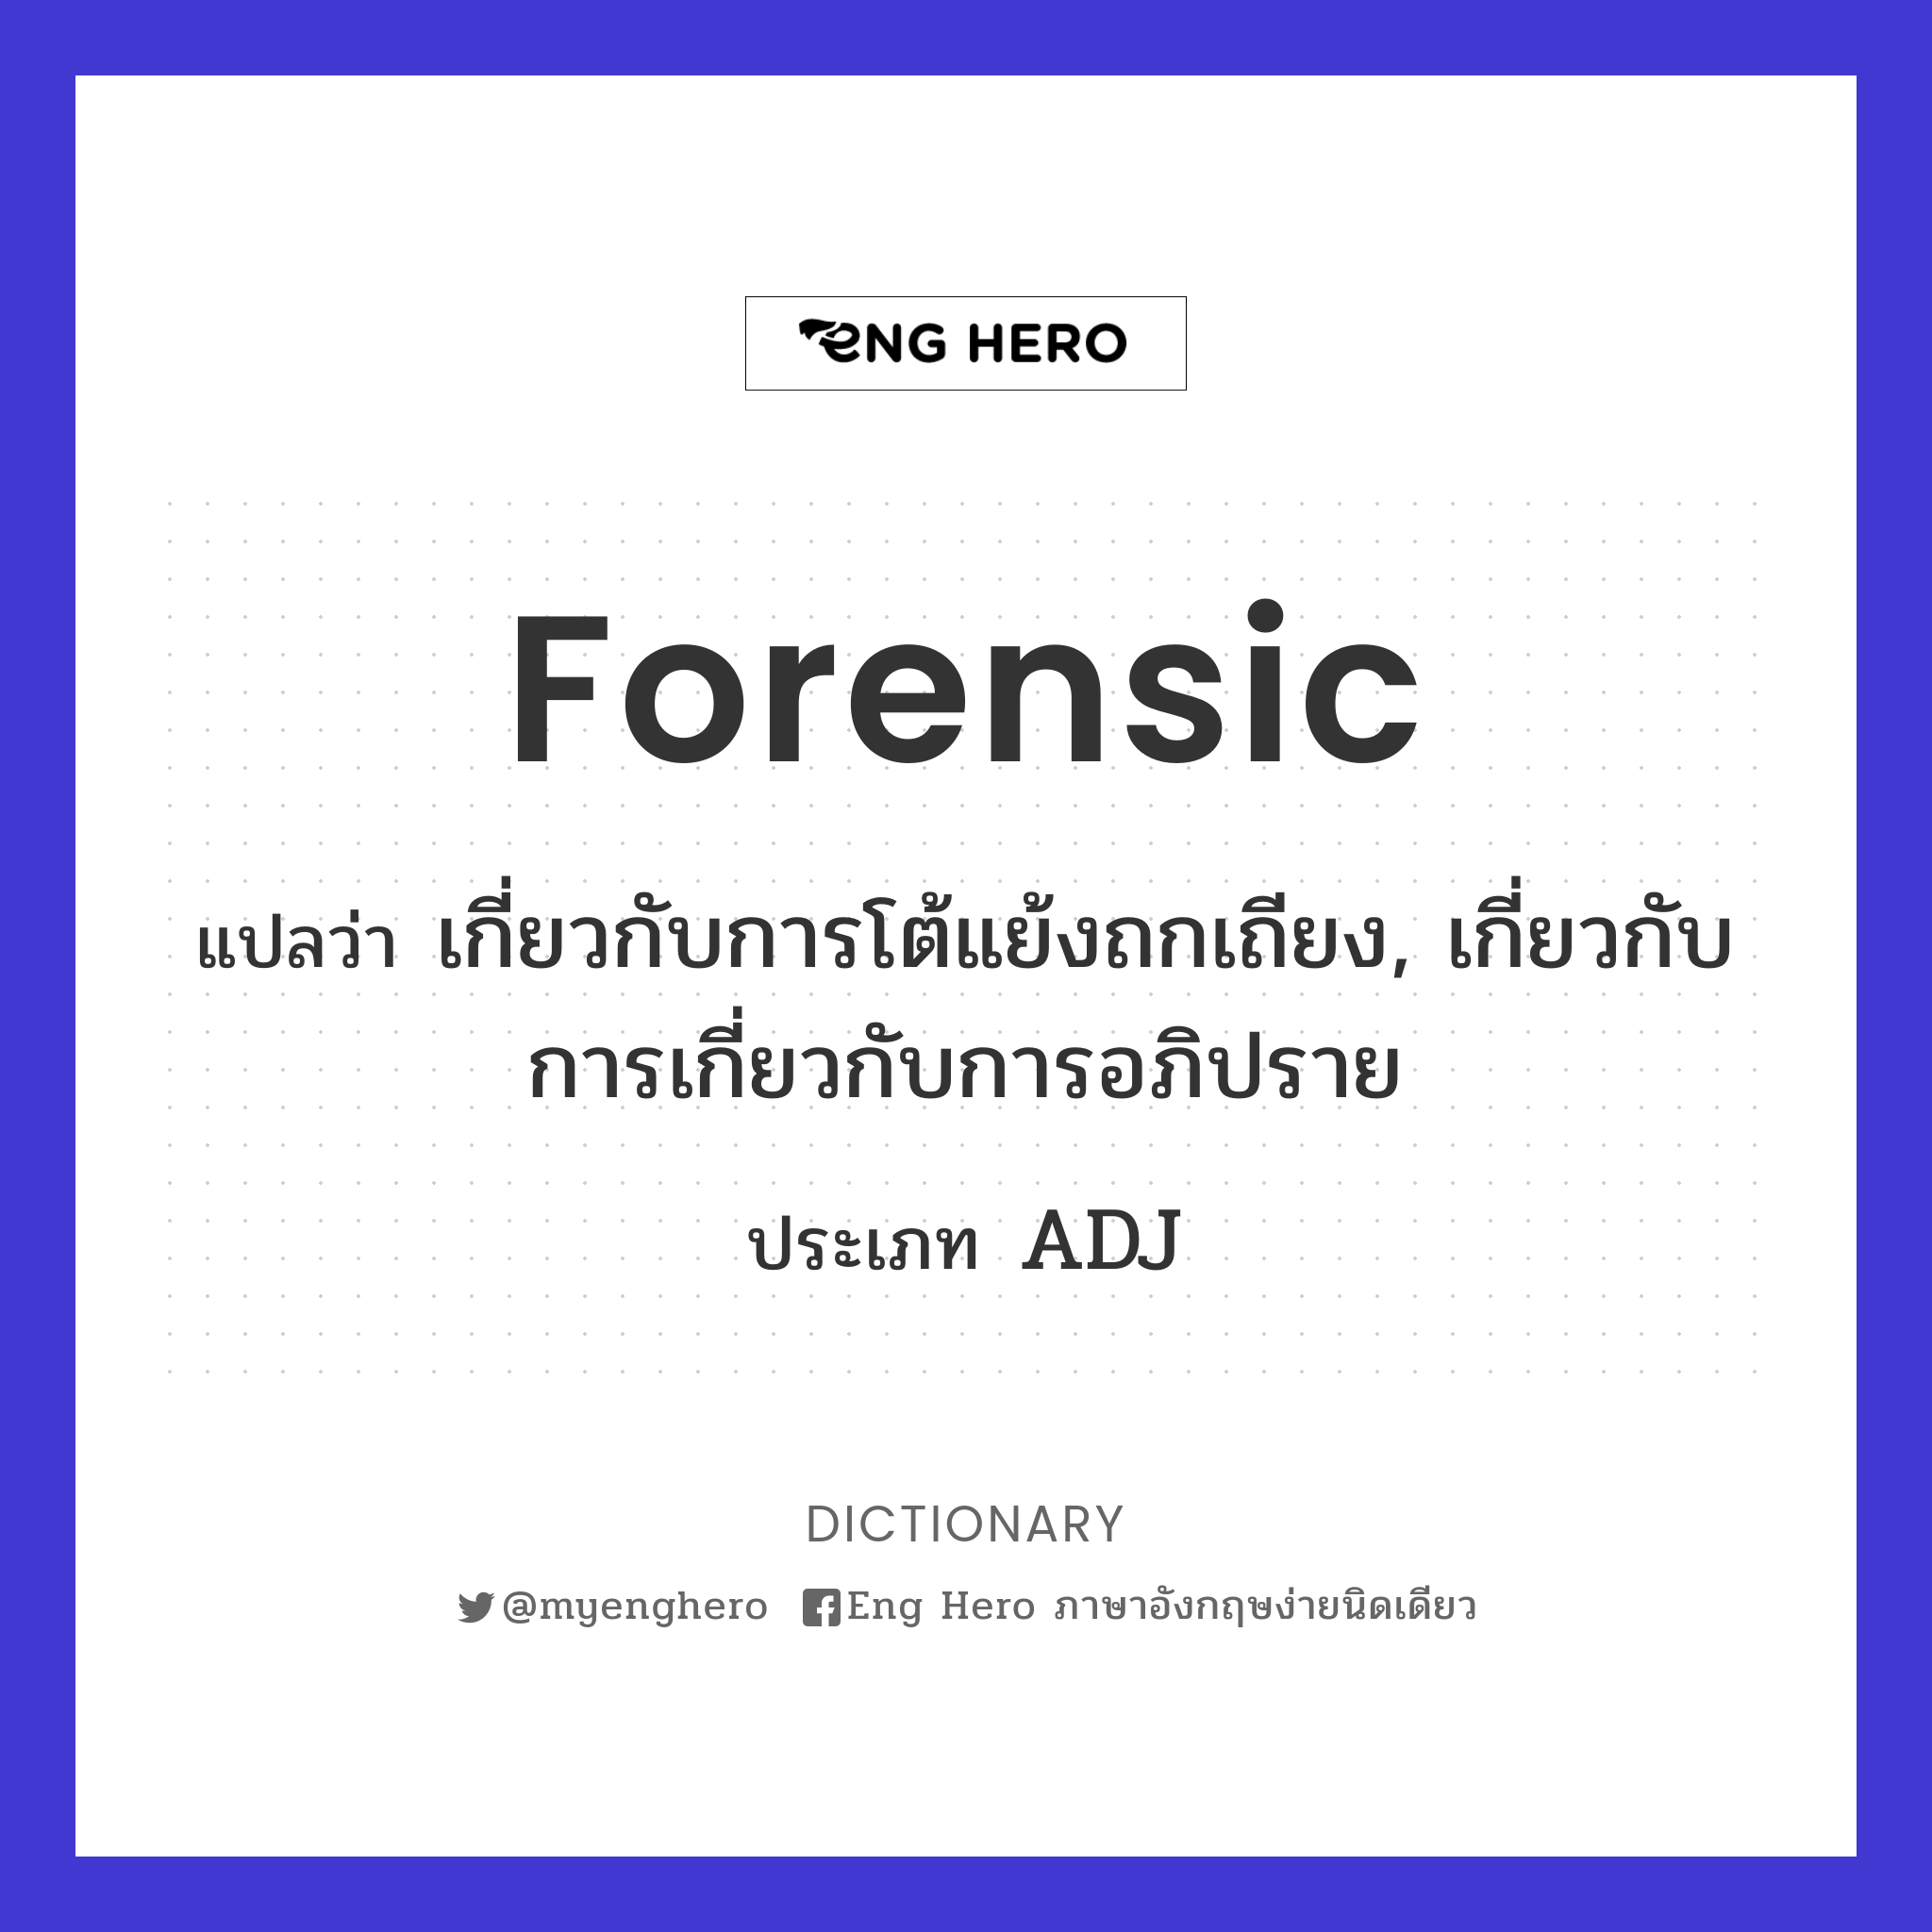 forensic